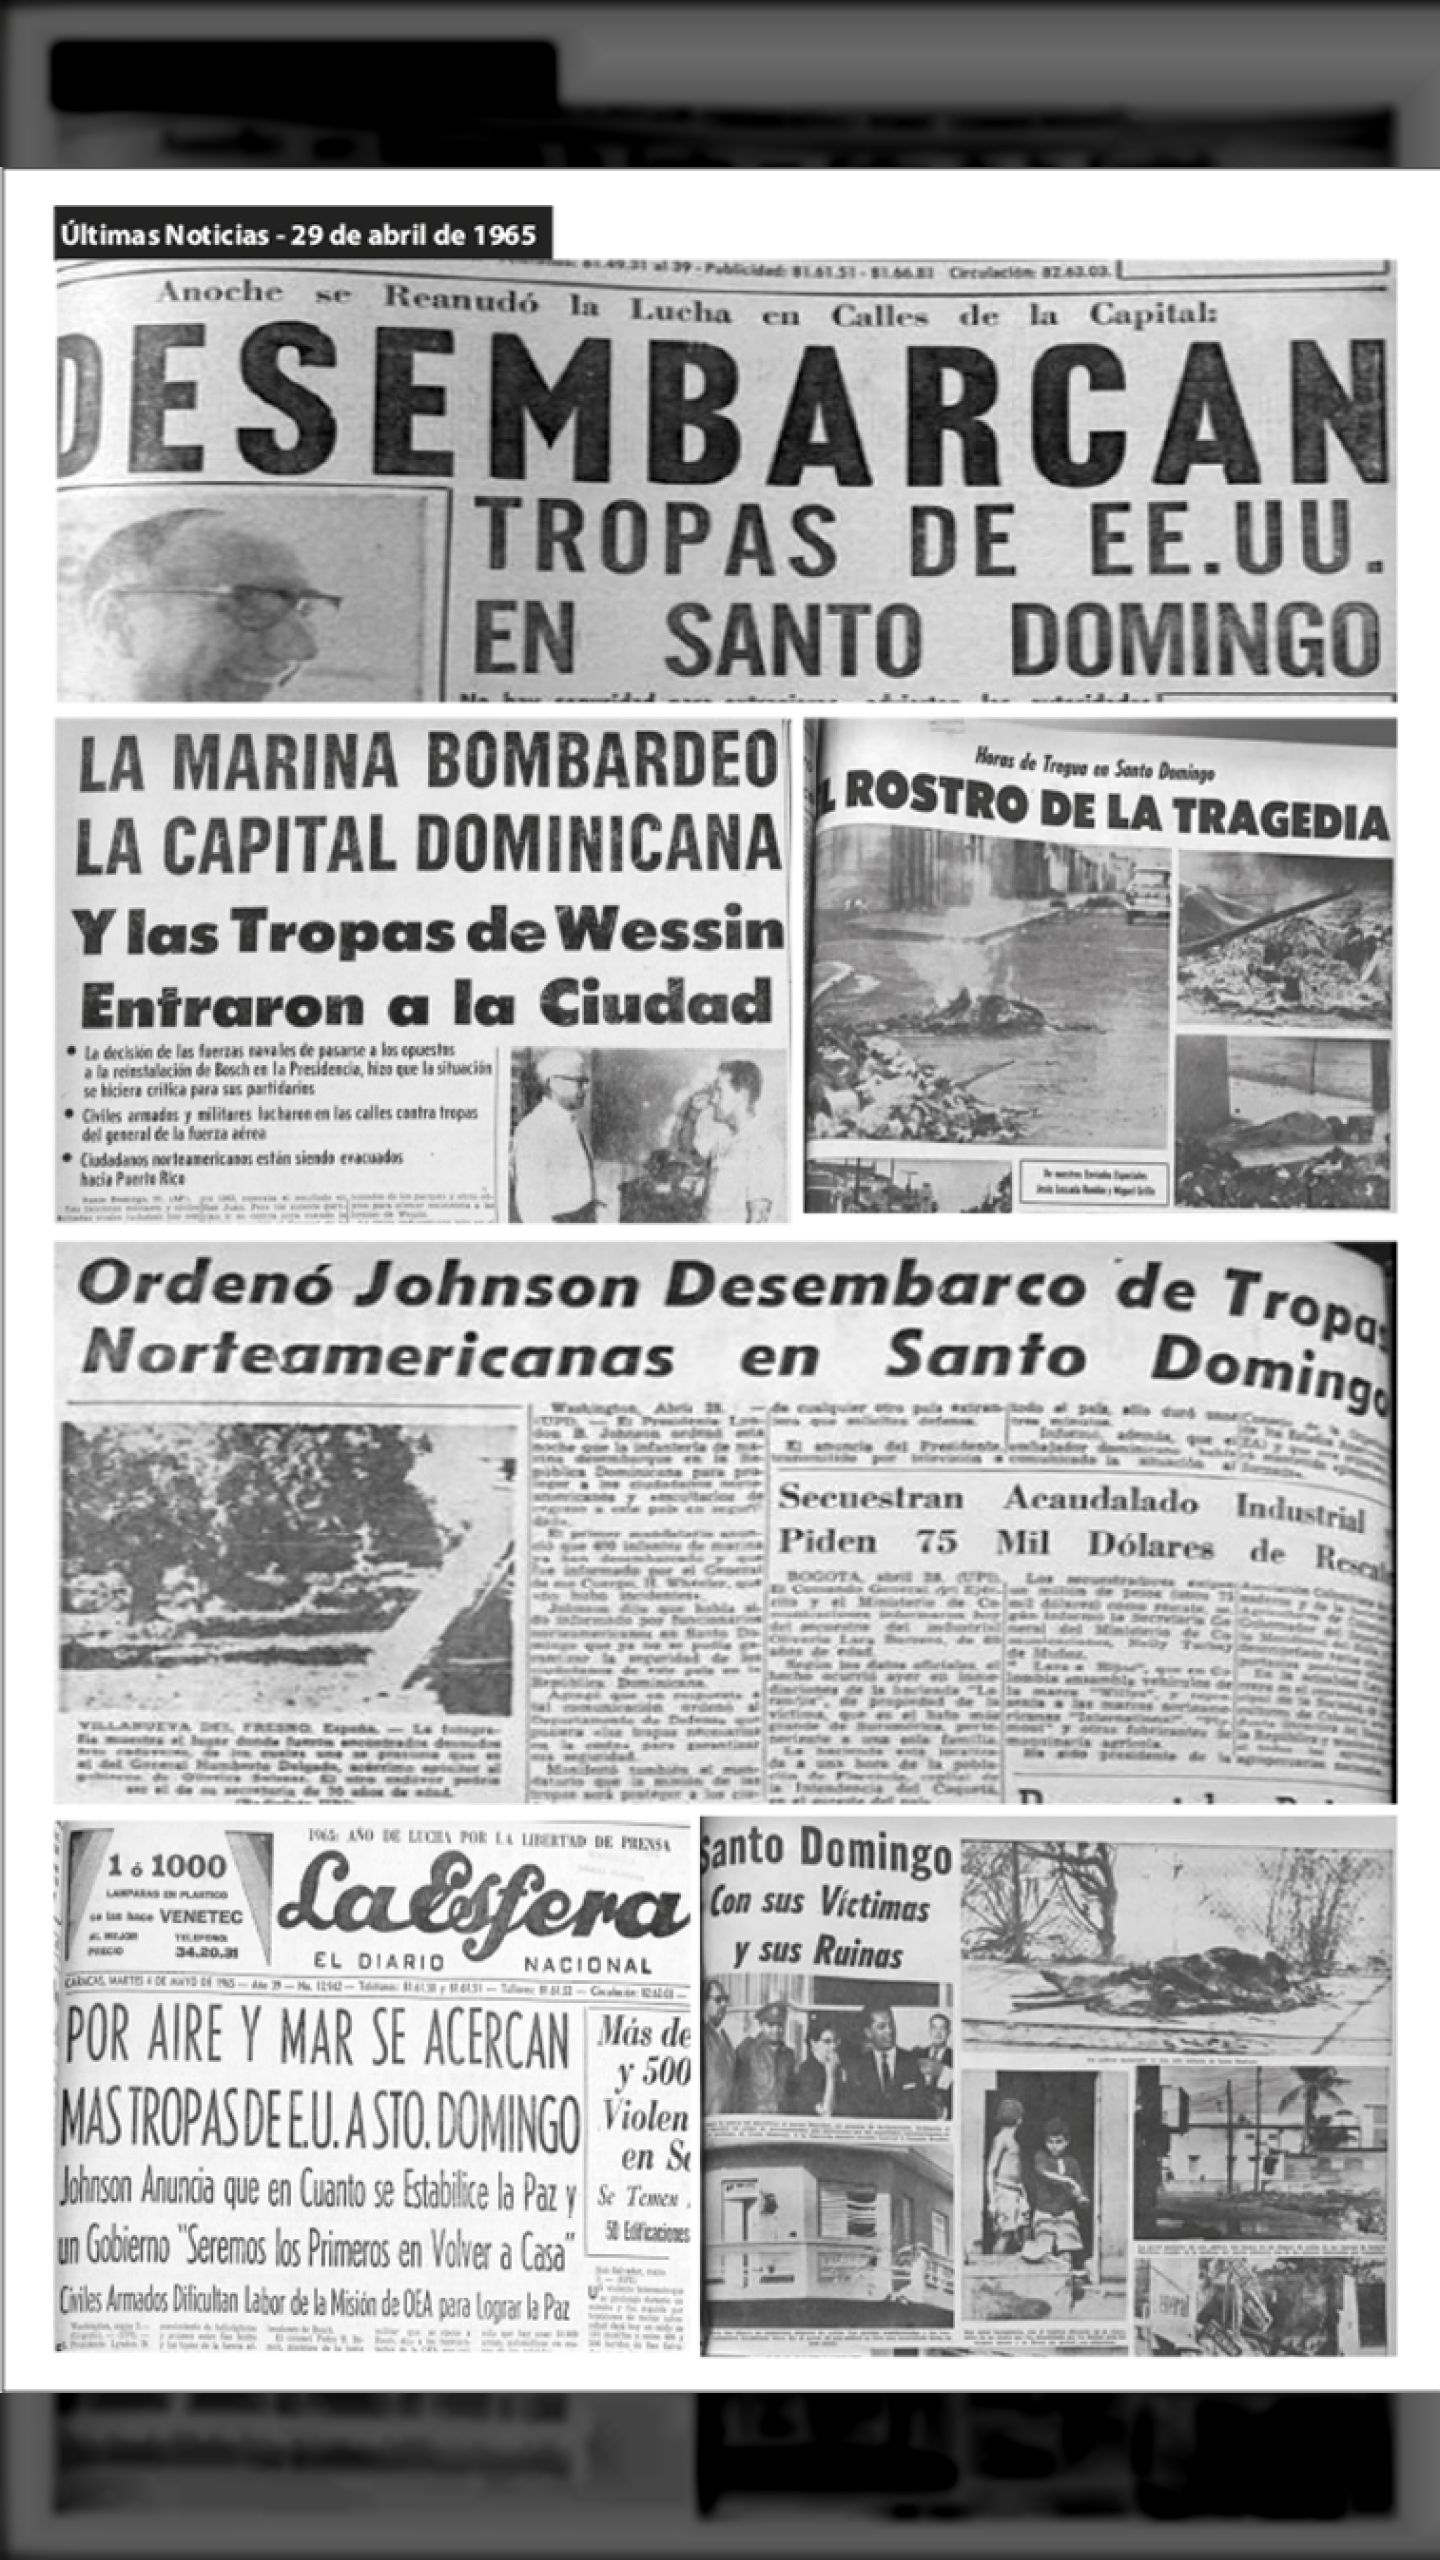 TROPAS DE EE.UU. DESEMBARCAN EN REPUBLICA DOMINICANA (ÚLTIMAS NOTICIAS, 29 de abril 1965)